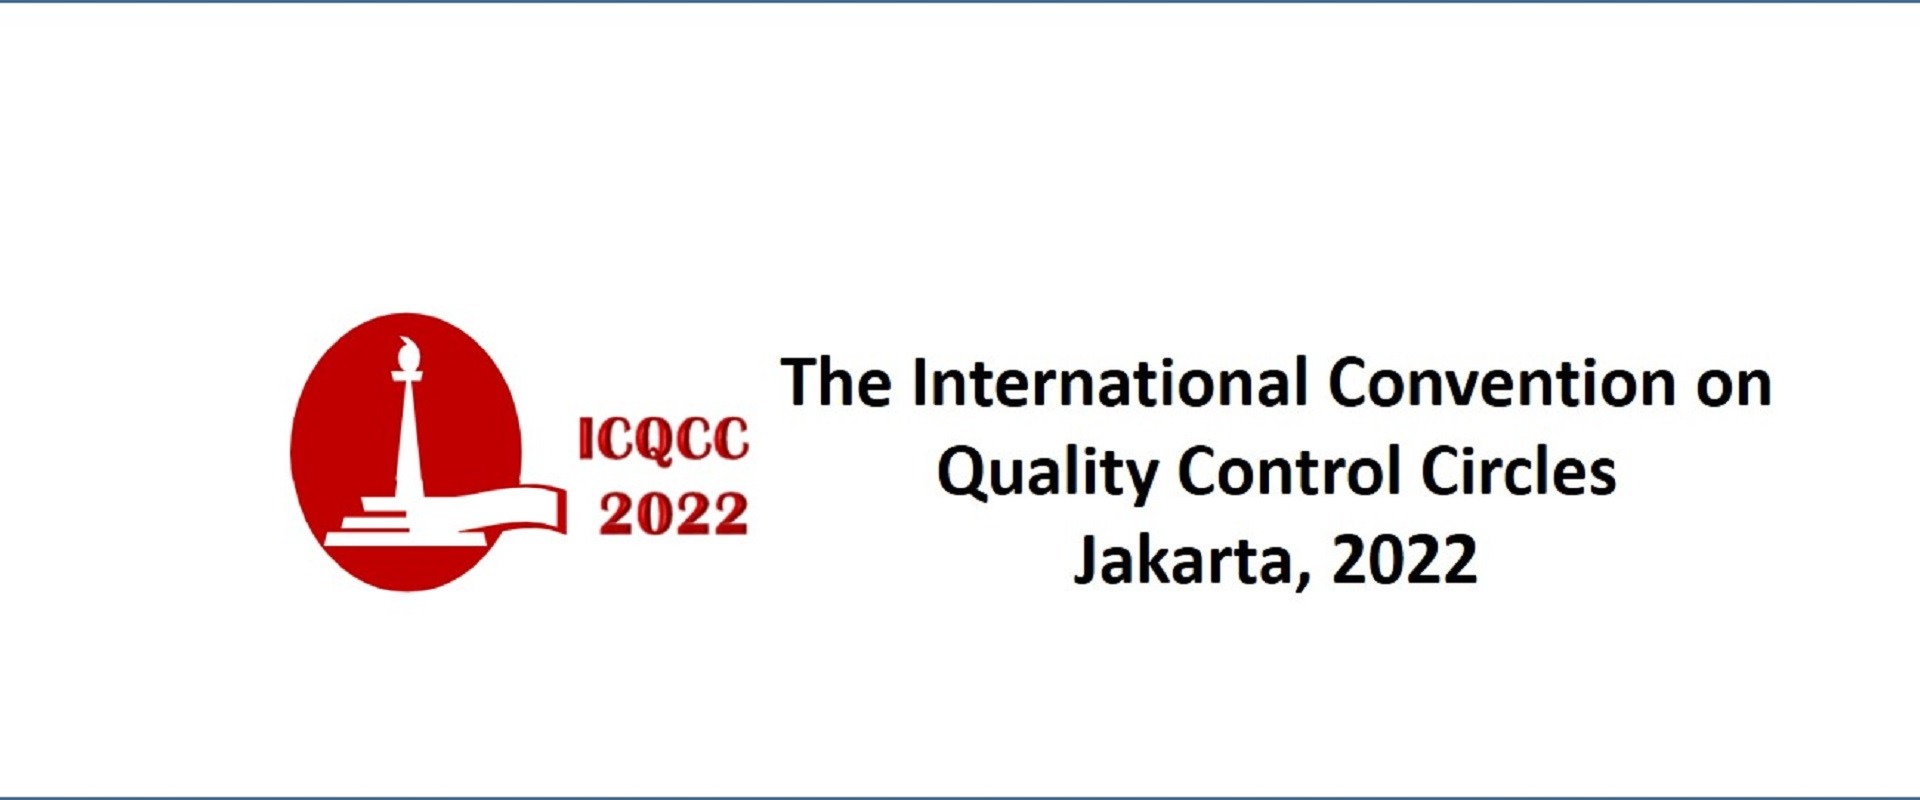 ICQCC 2022 in full swing in Jakarta